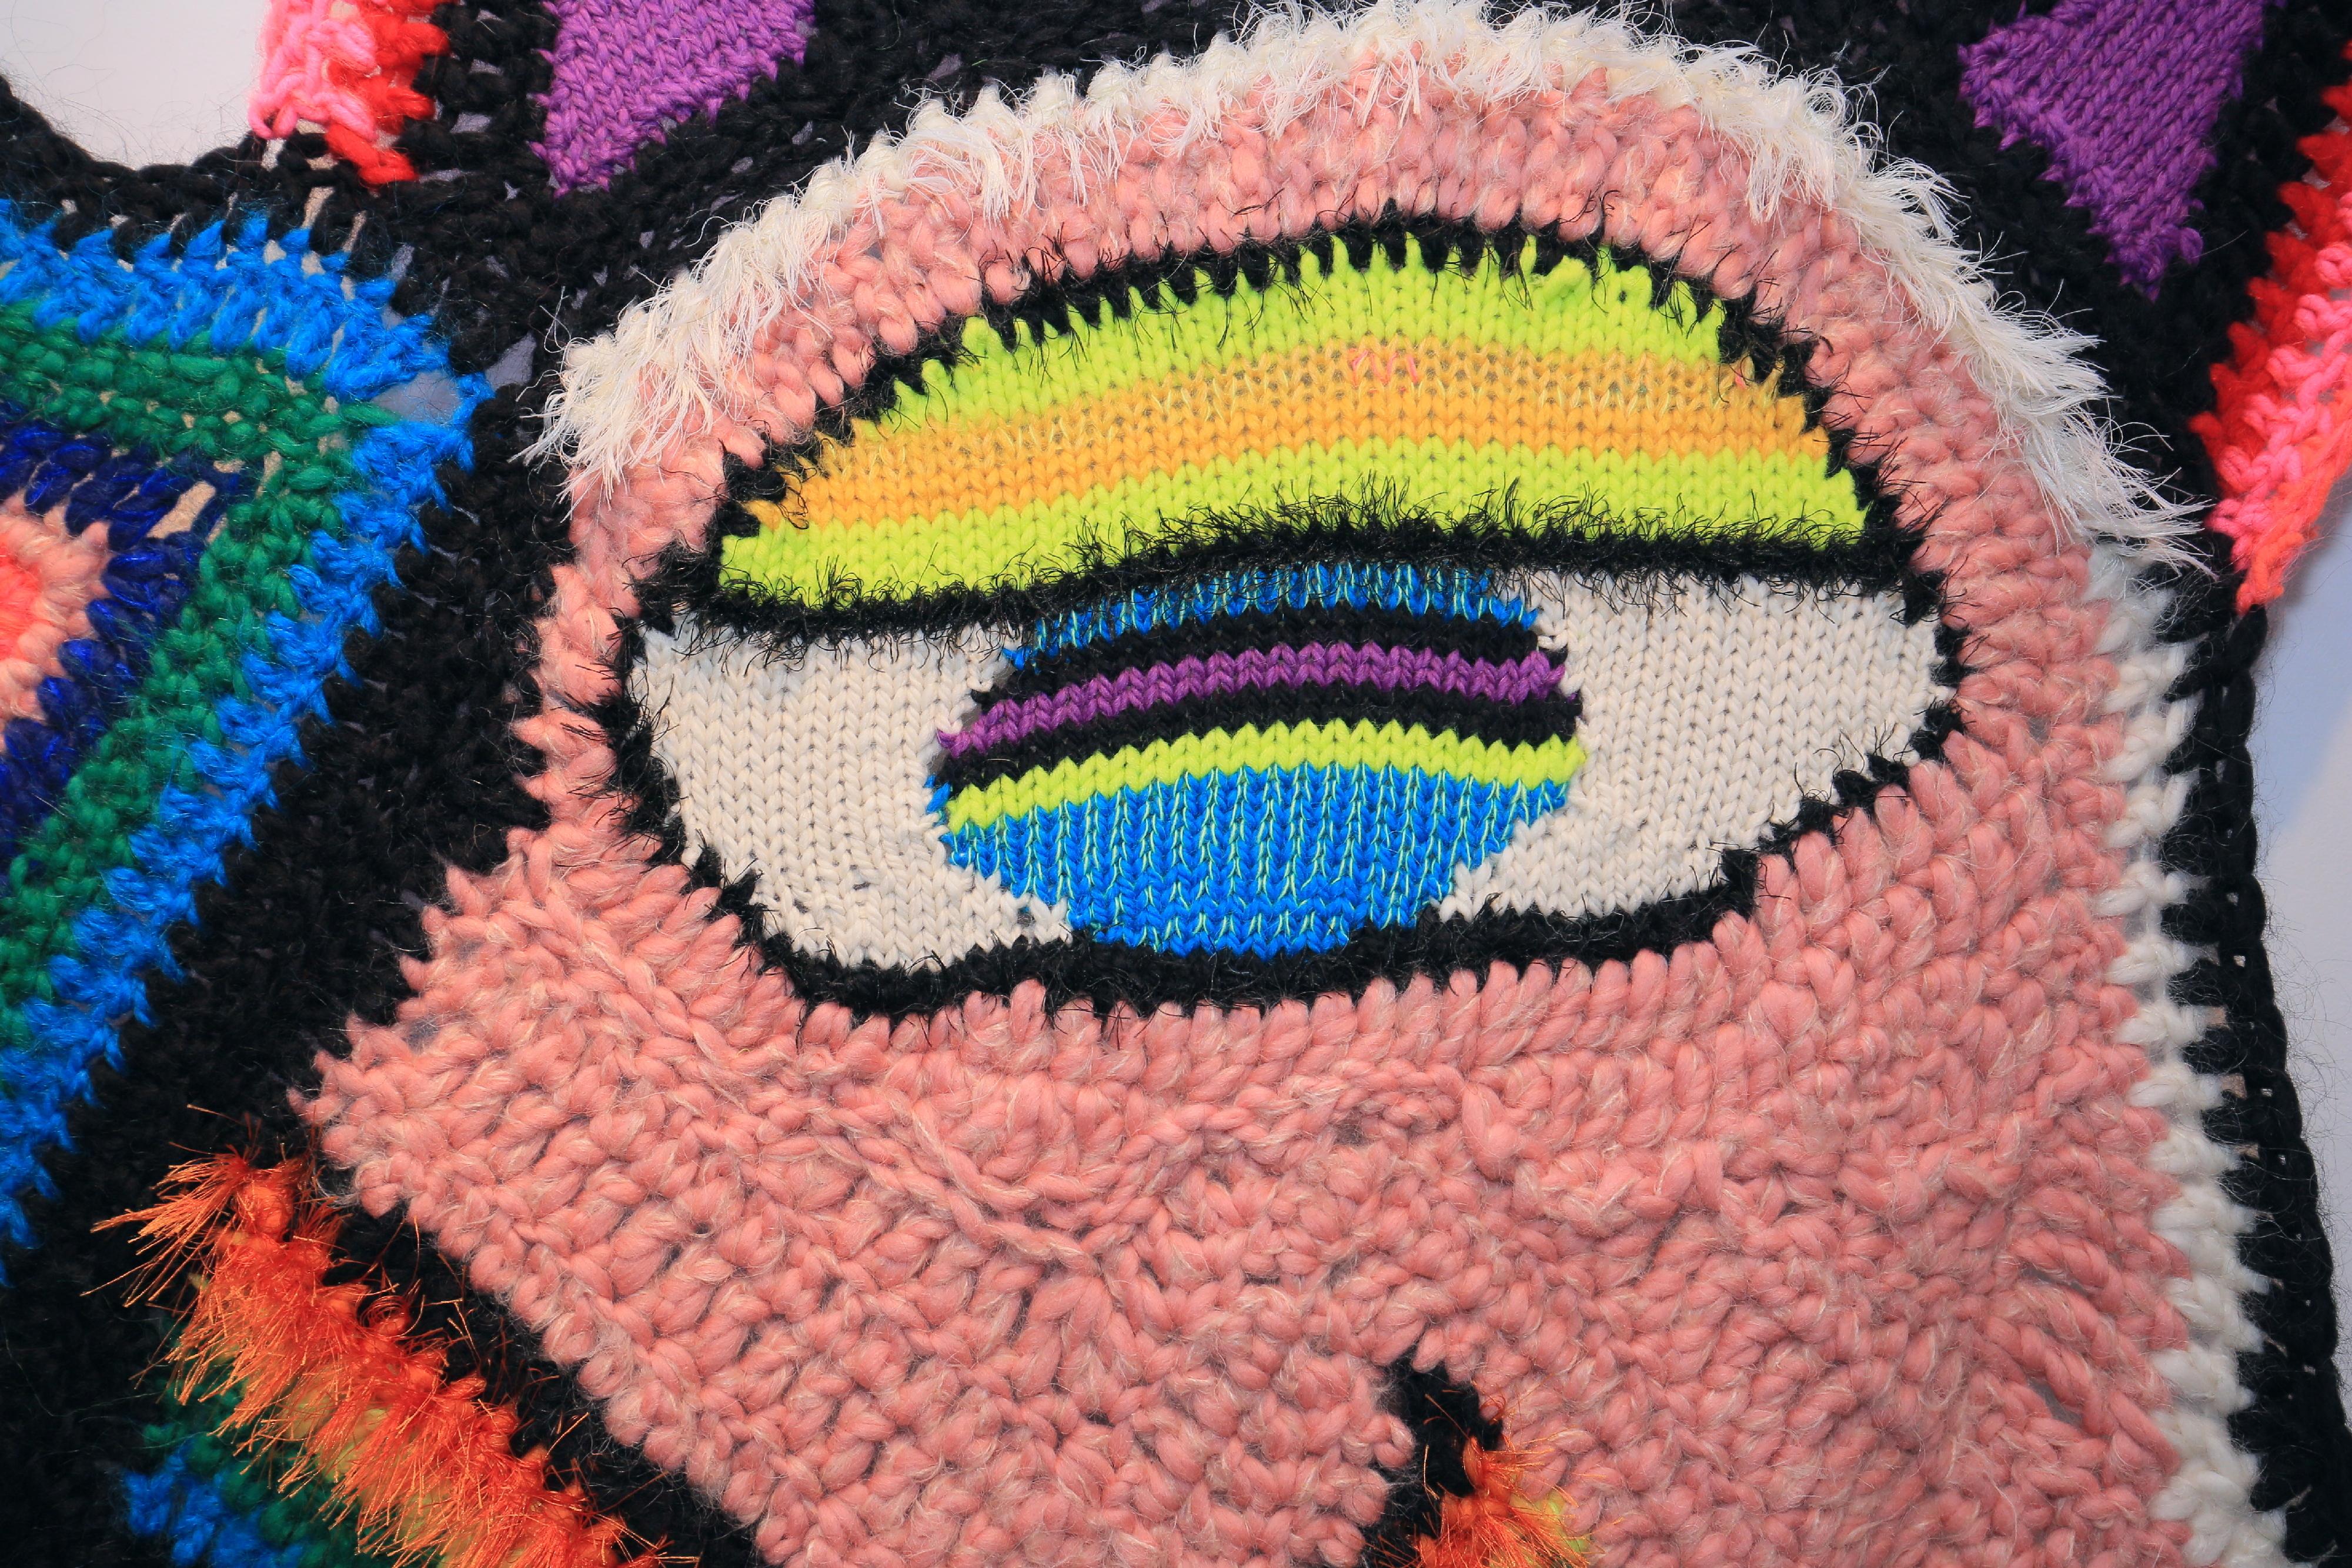 Art textile, fait à la main, couverture d'art en tricot et crochet, tapisserie tricotée, tenture murale, art abordable.
Visage multicolore, abstrait et géométrique révélé dans un patchwork arlequin de motifs et de couleurs. De luxueux mélanges de